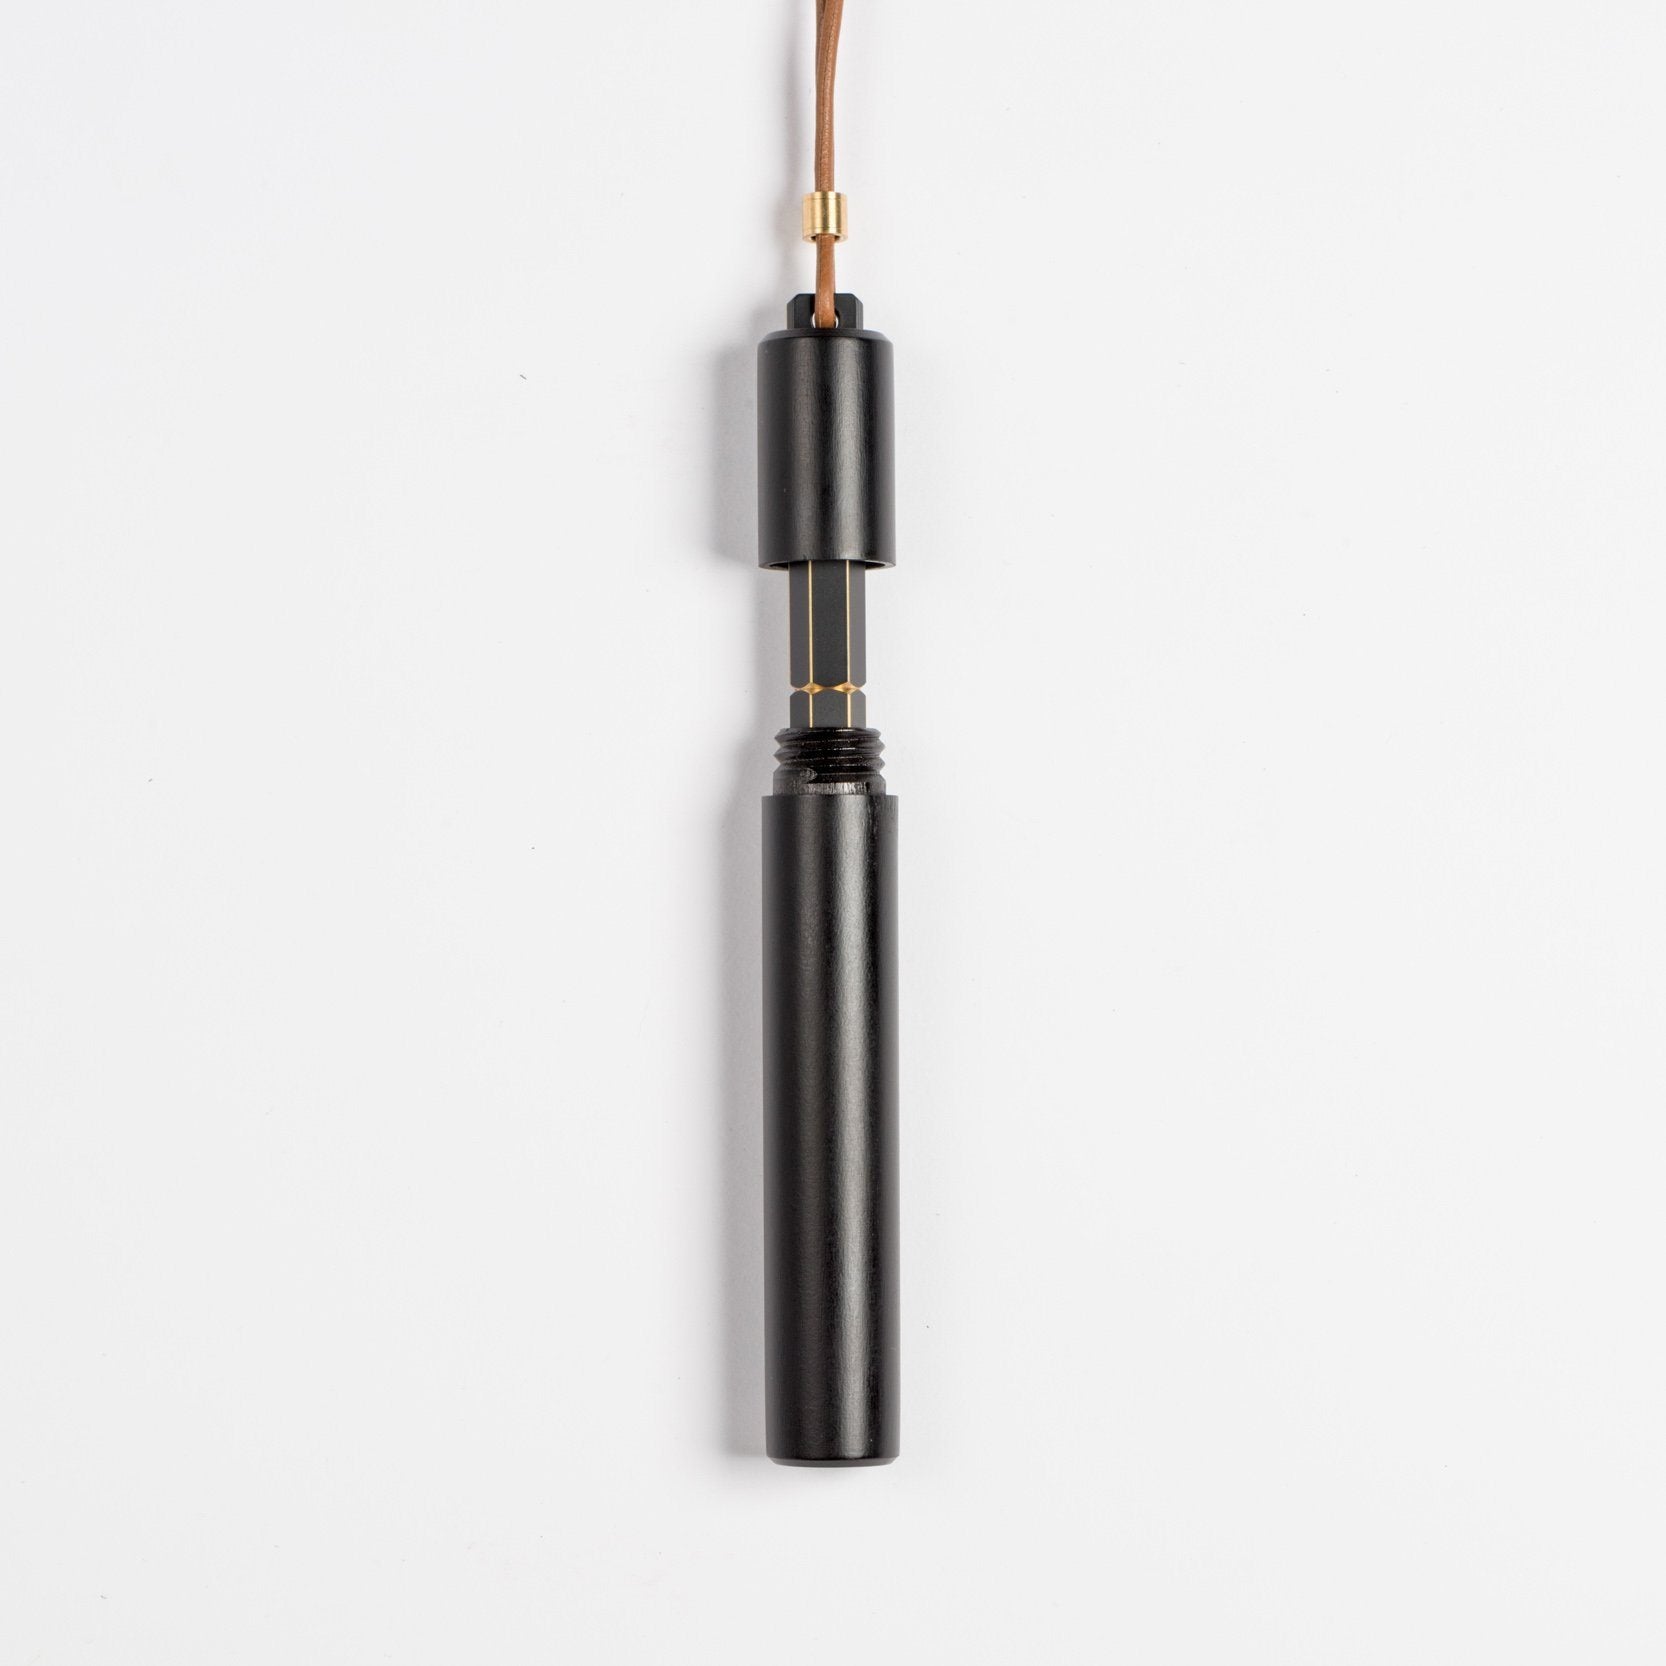 YSTUDIO - Classic Revolve Portable Fountain Pen (Black)